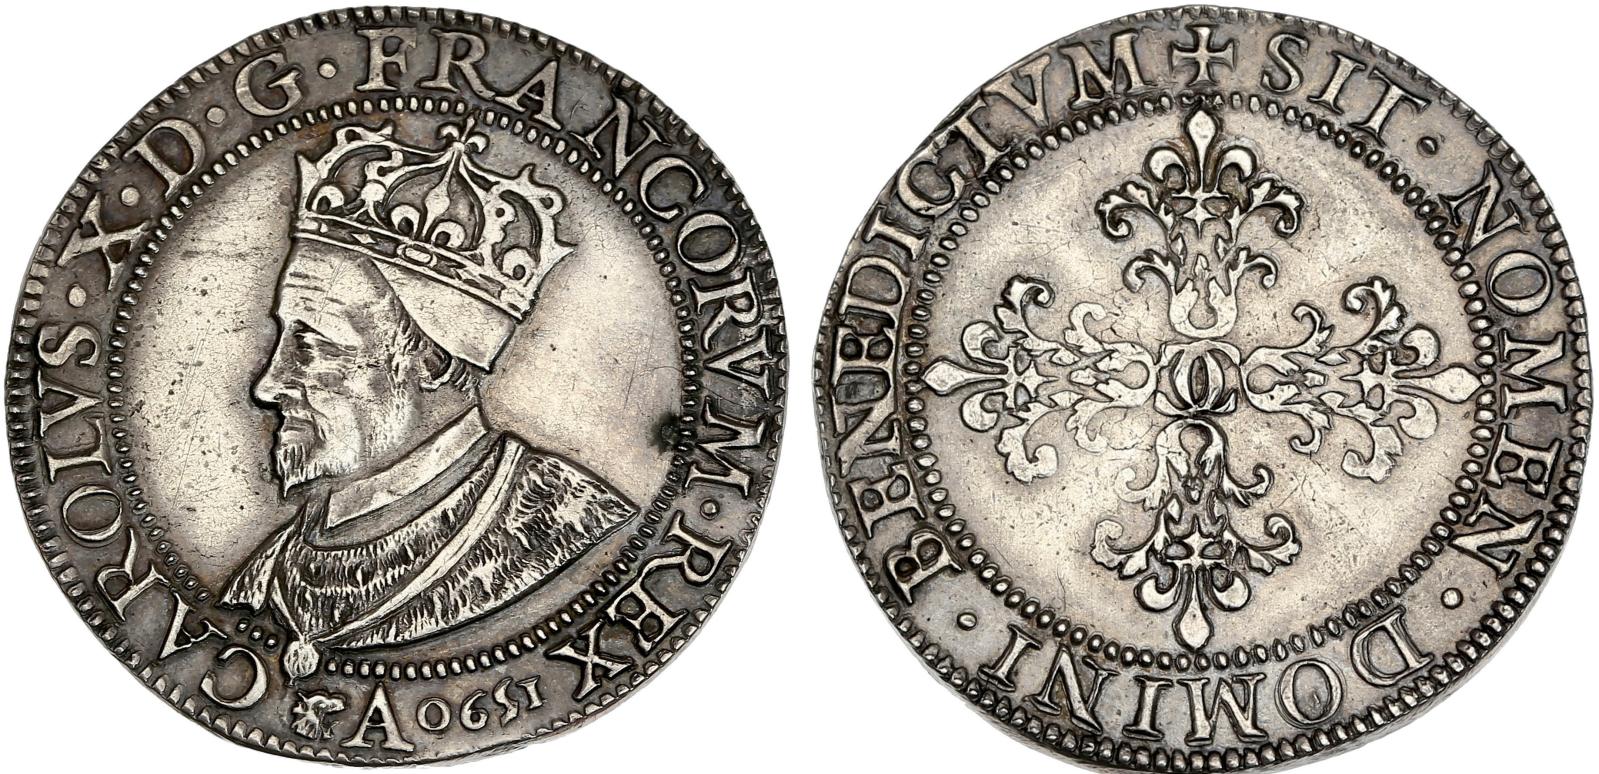 Charles X, roi de la Ligue (1589-1590), Franc, 1590. Paris. 14,06 g, tranche lisse, buste à gauche du roi, avec une couronne fermée posée 